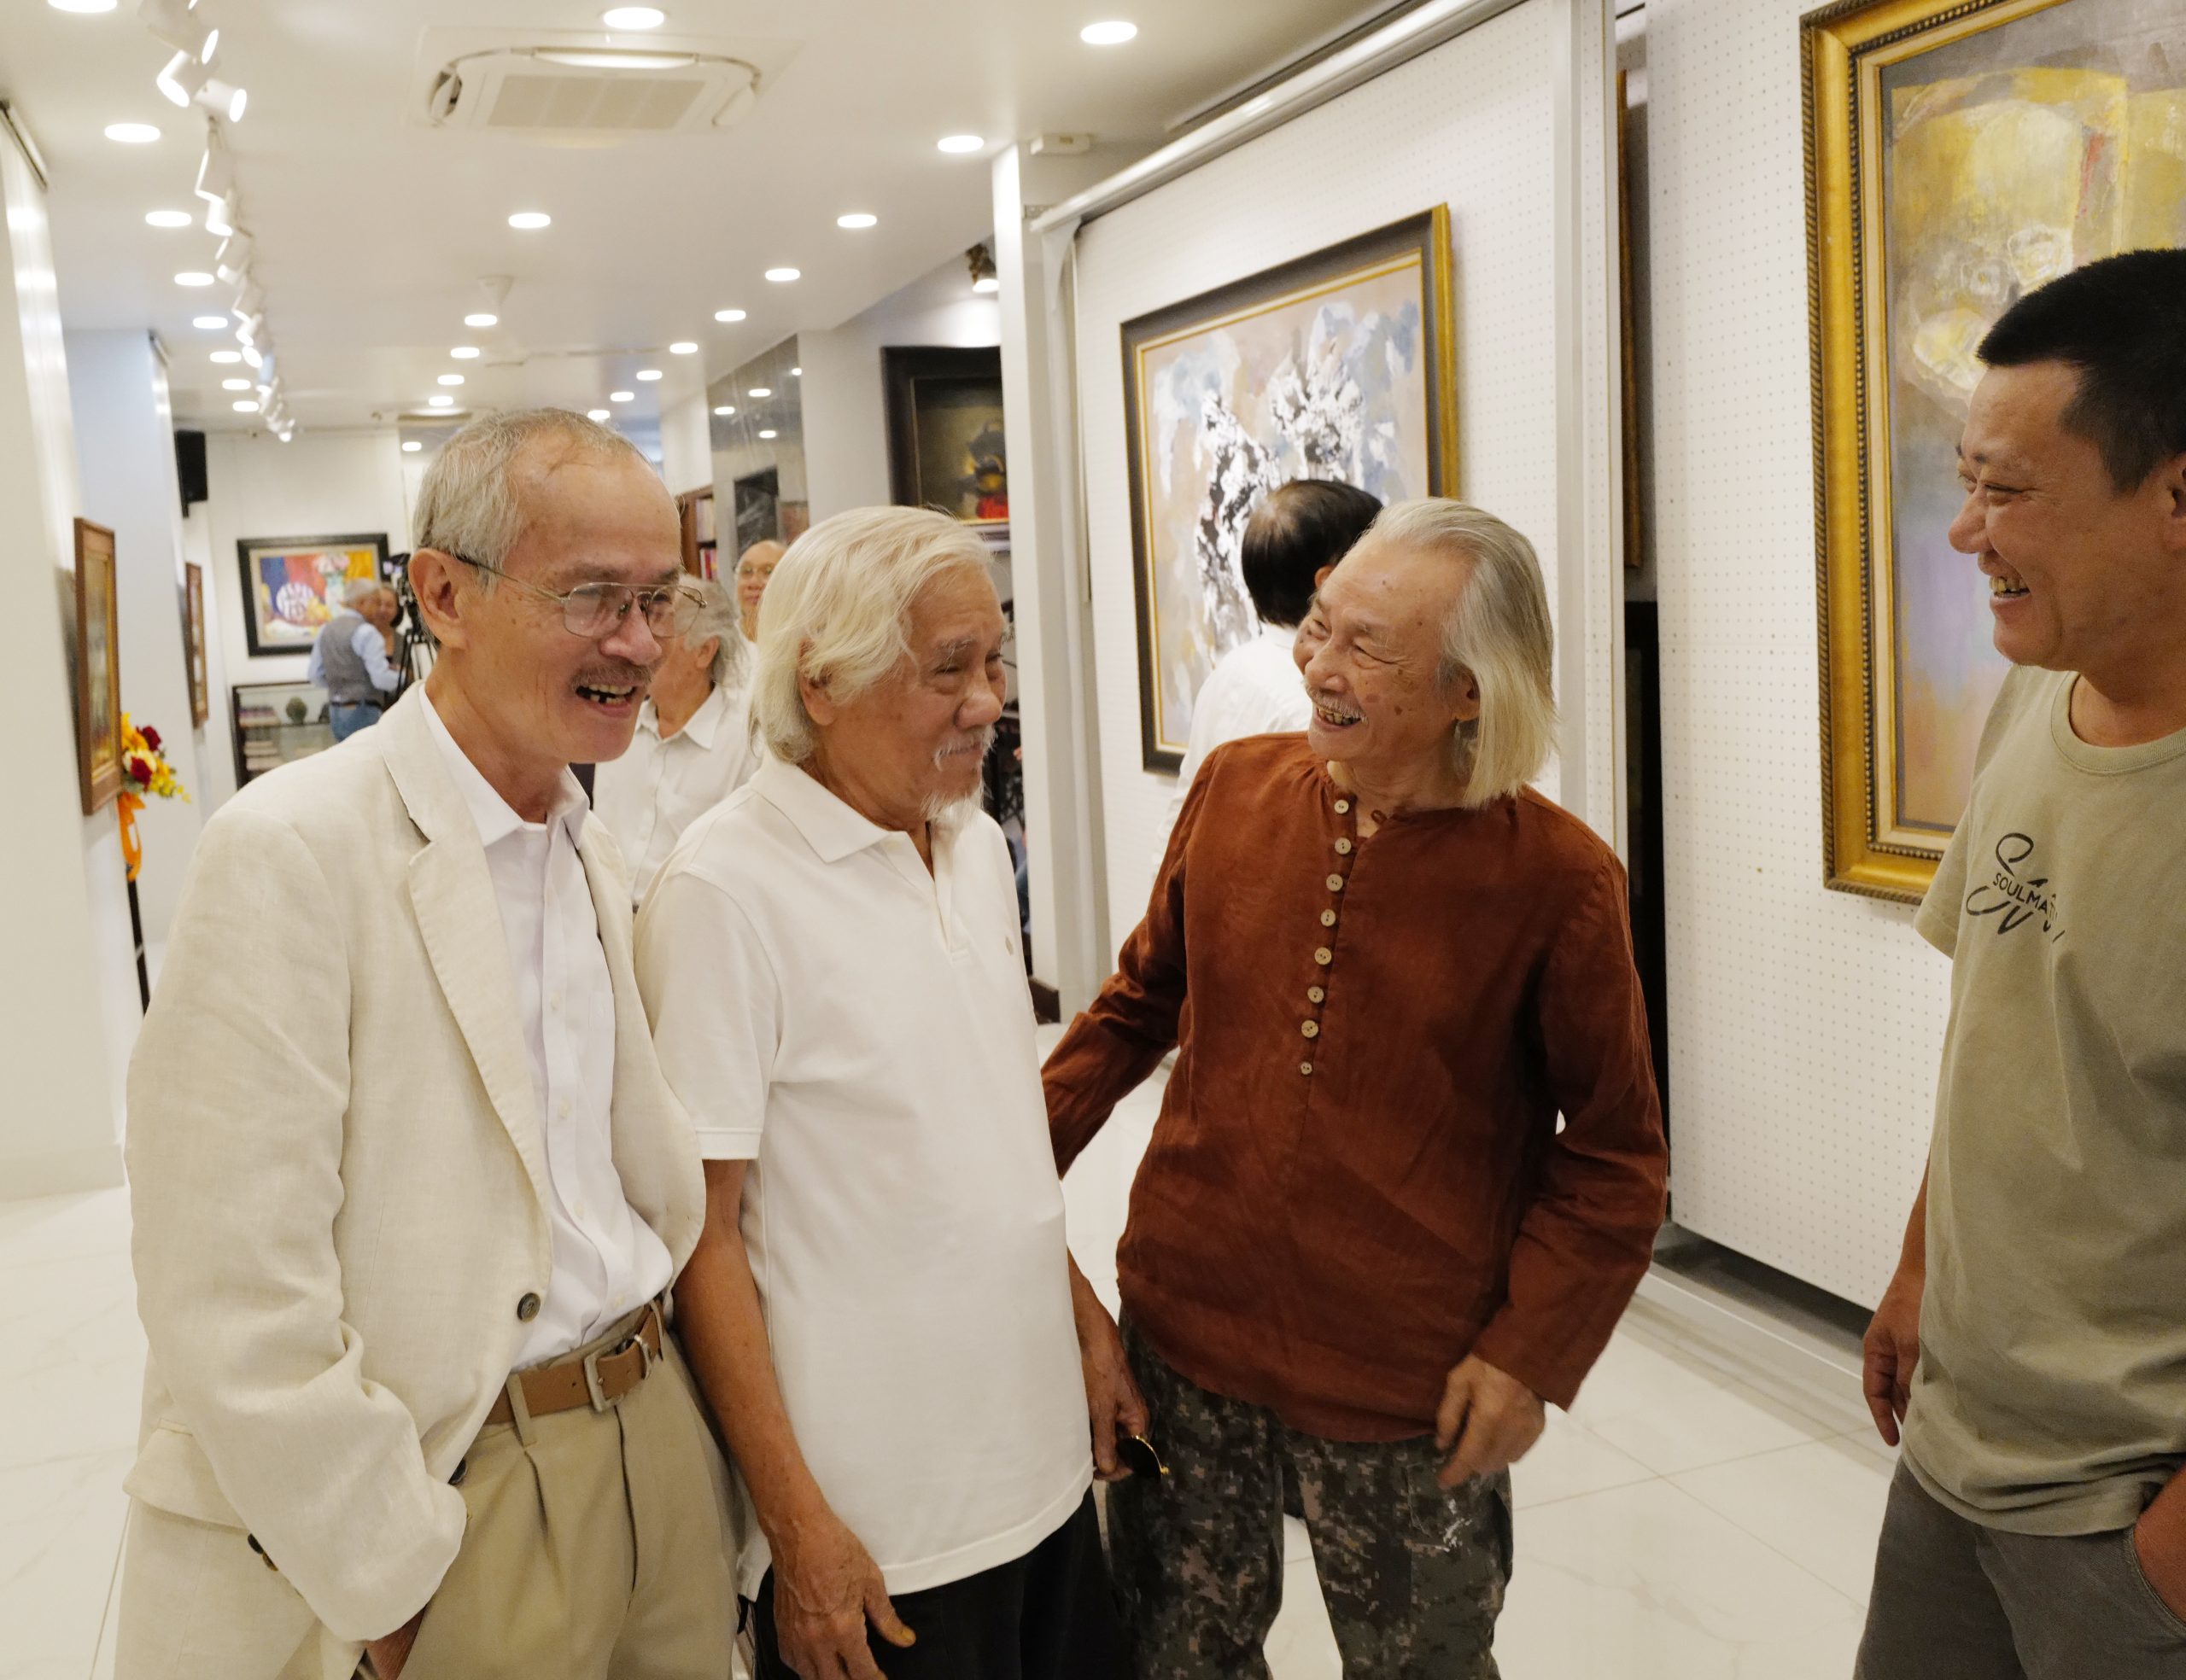 ừ trái qua: Họa sĩ Đỗ Duy Tuấn, họa sĩ Hồ Hữu Thủ và họa sĩ Dương Sen hội ngộ tại triển lãm - Ảnh: TV